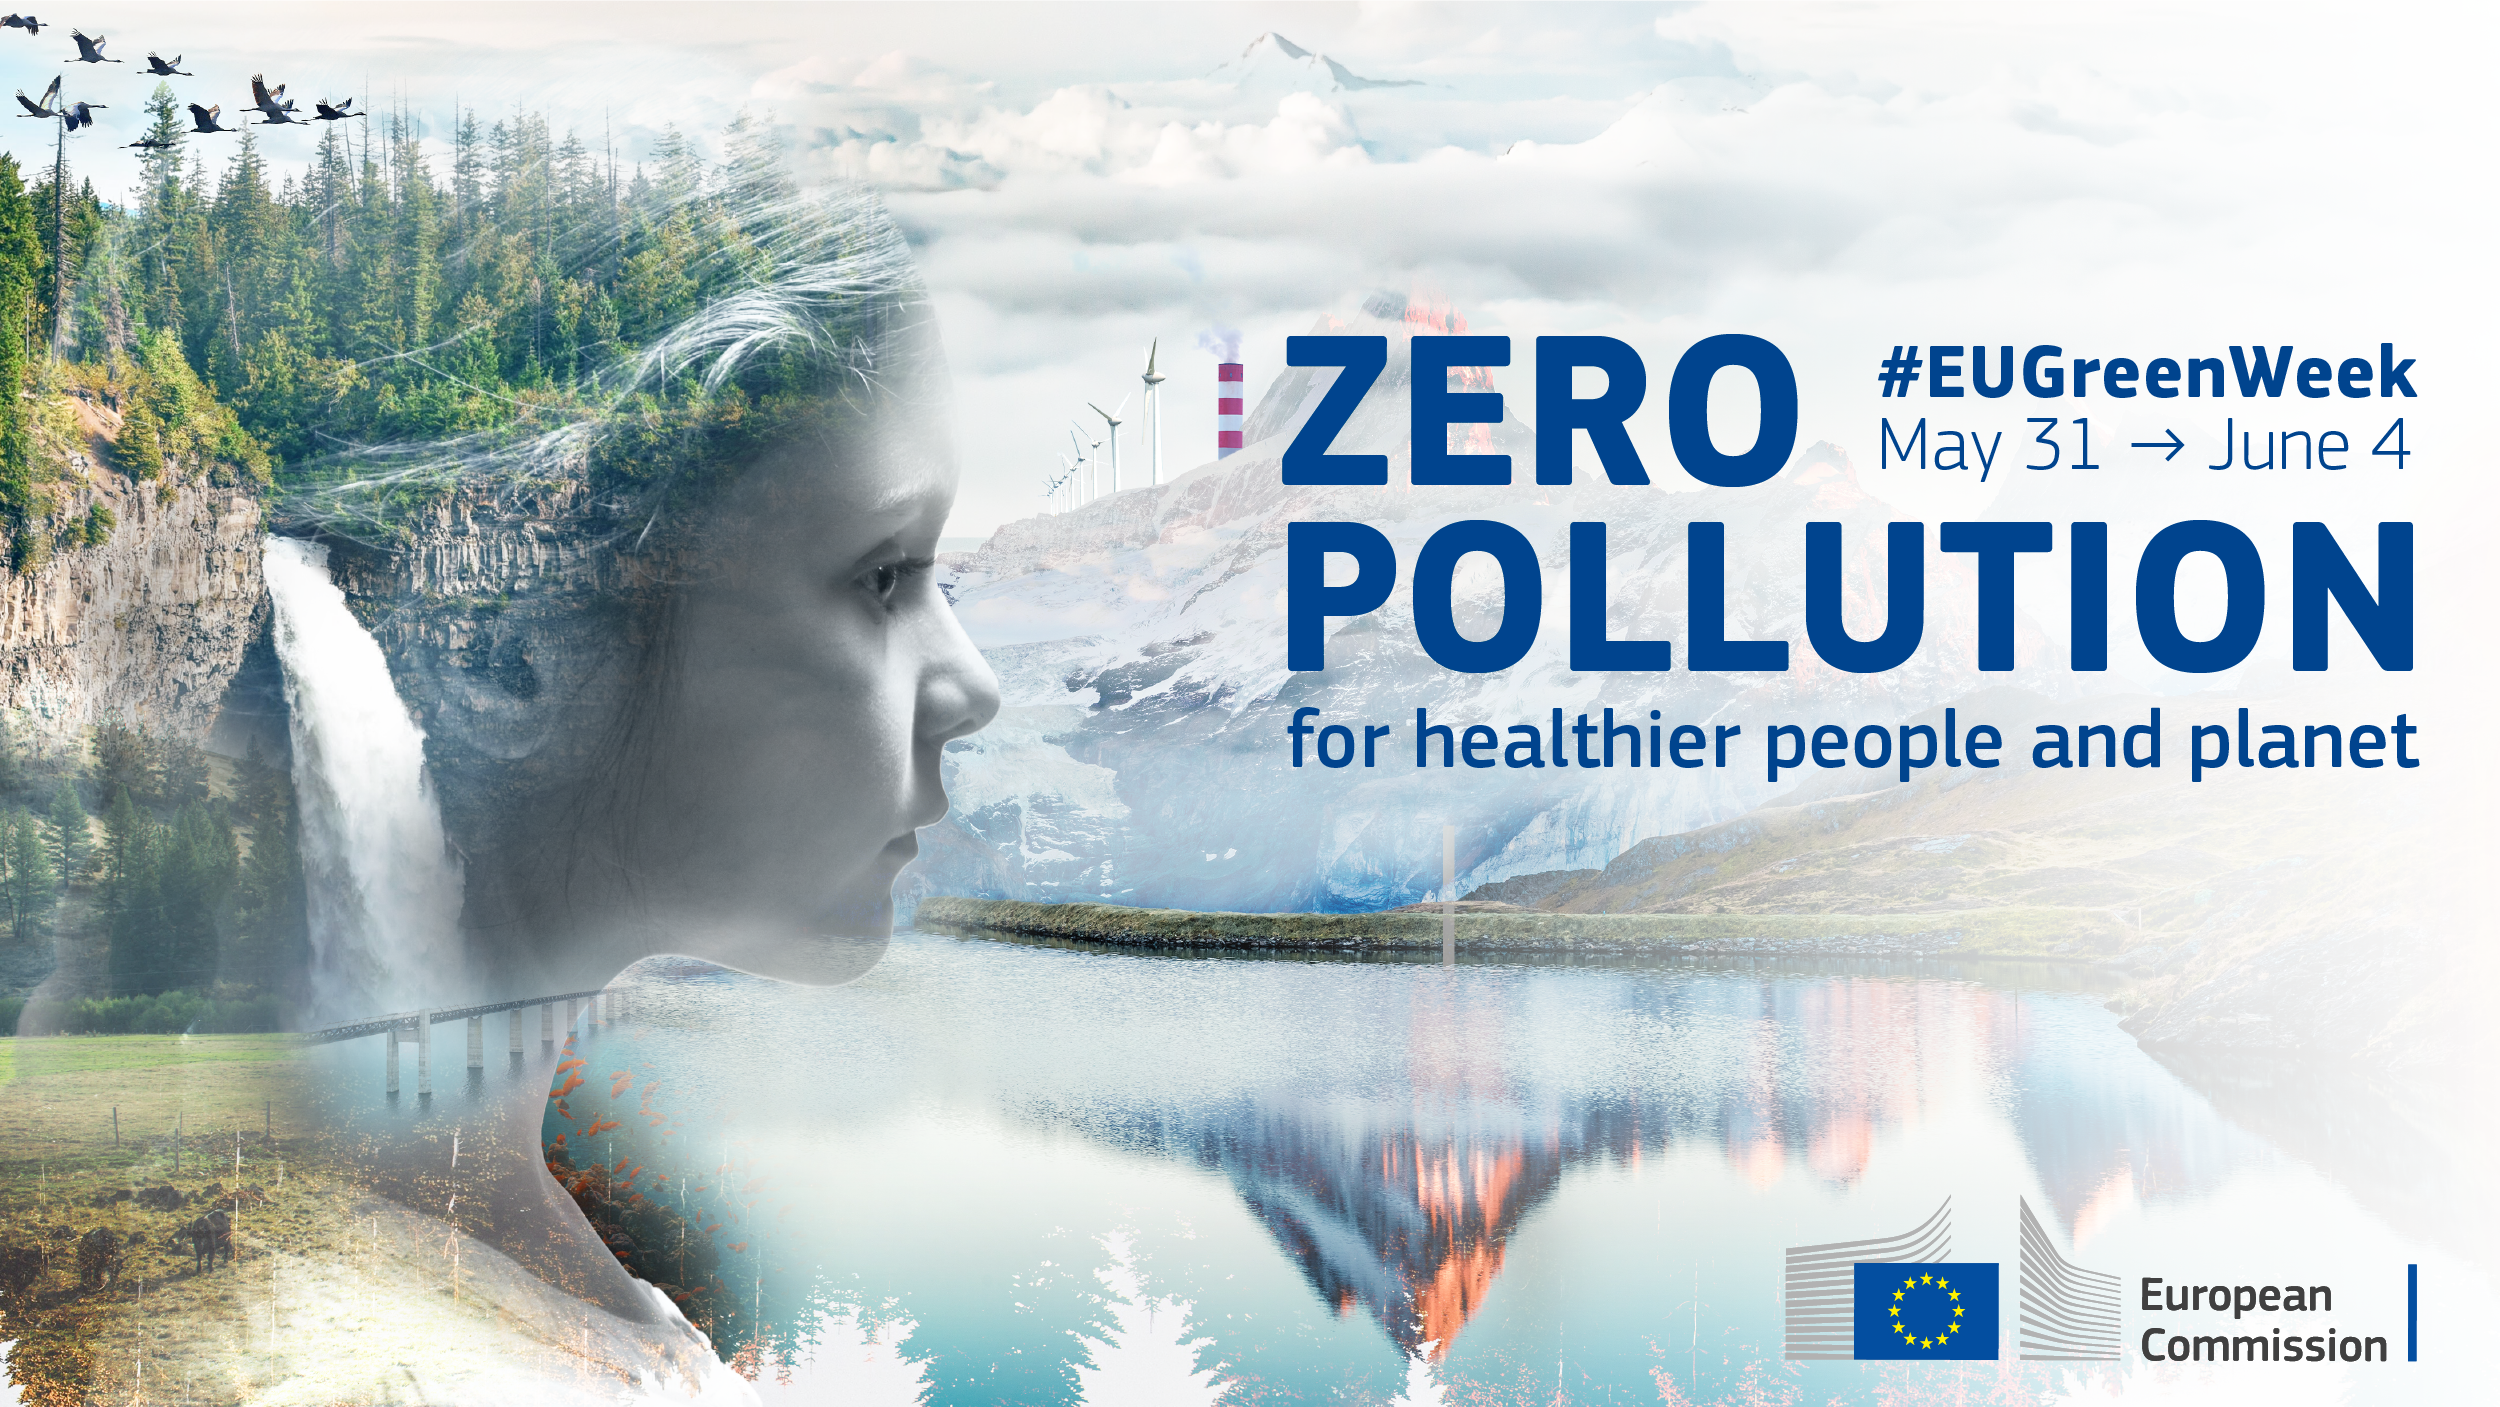 EU Green Week on zero pollution: Flanders best practices in water